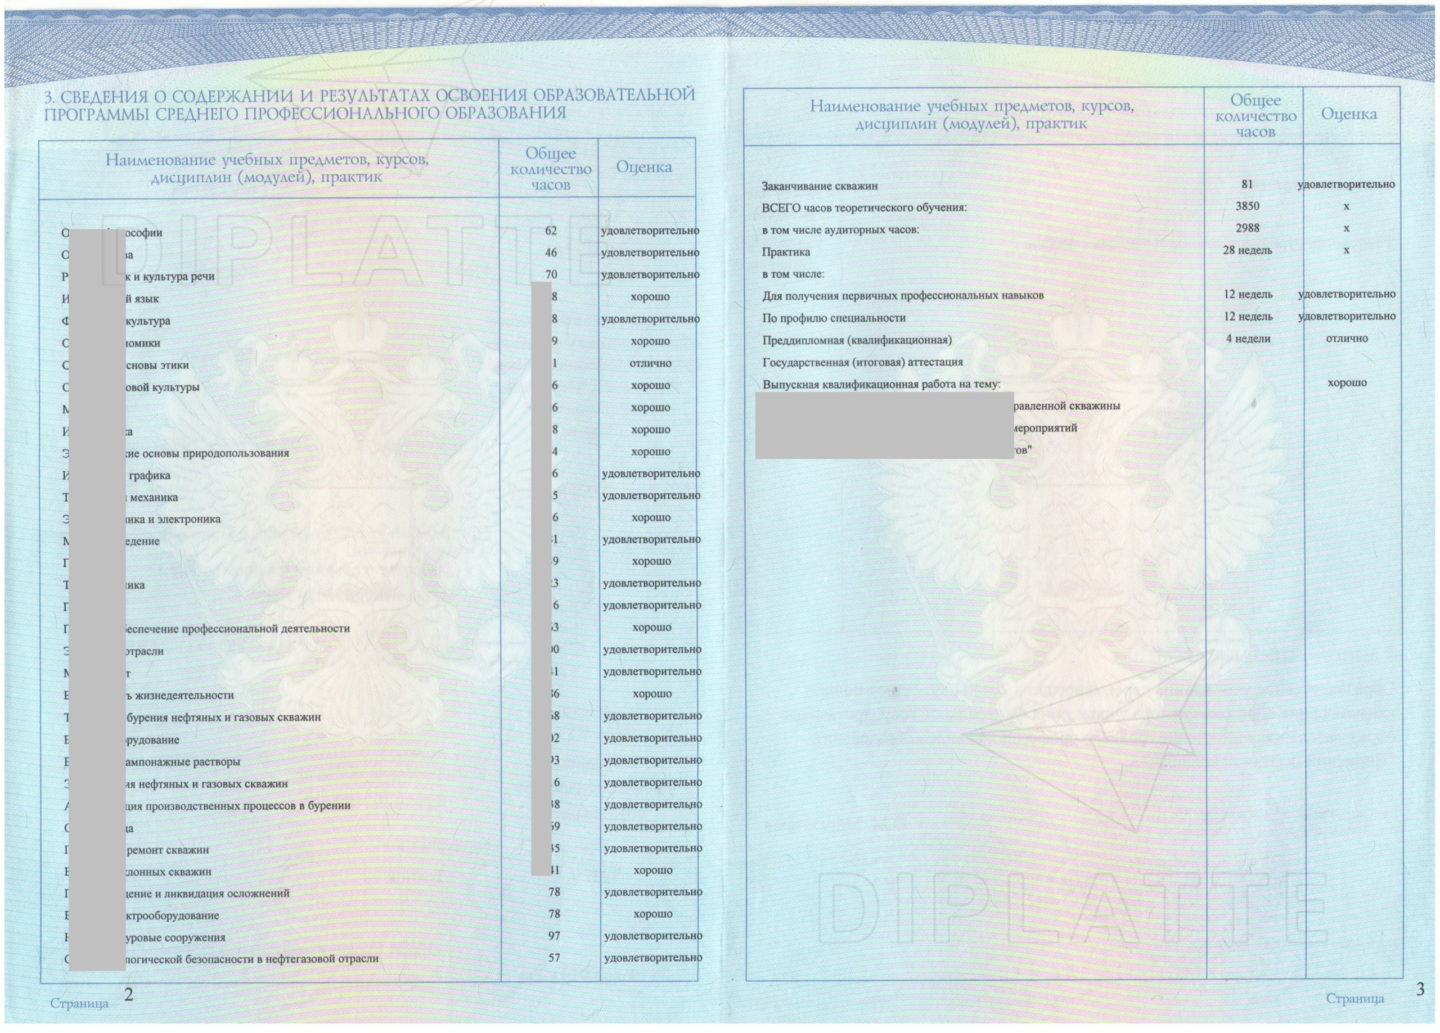 Предметы диплома Пермского нефтяного колледжа, выданного в 2014 году